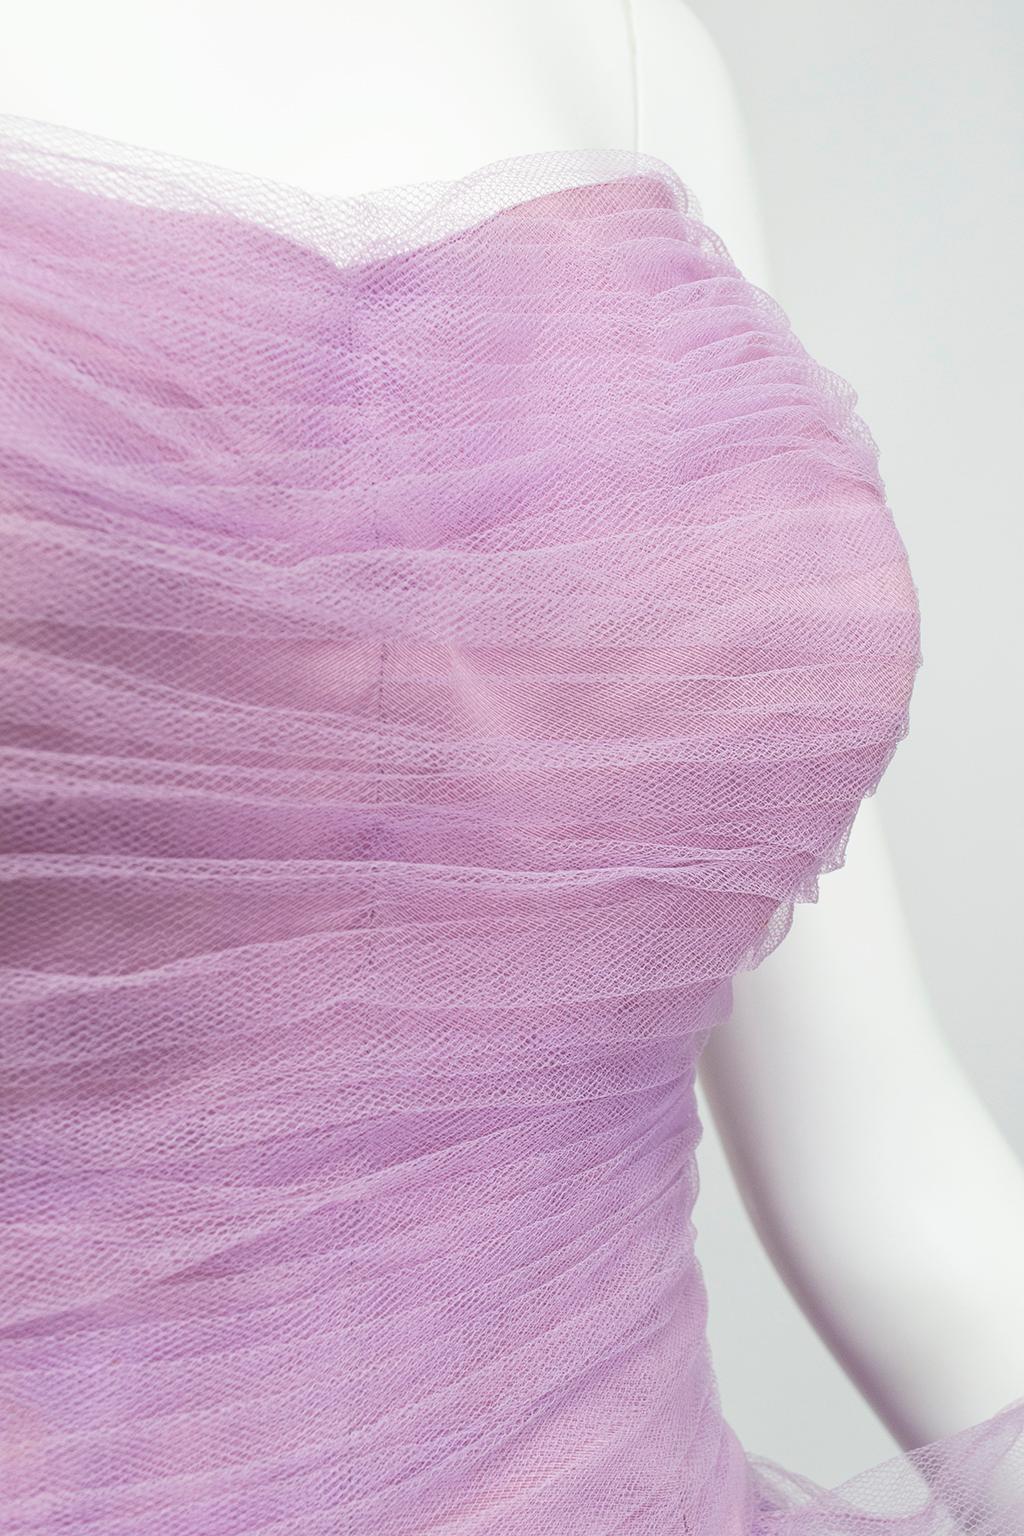 Women's Voluminous Strapless Lavender Tulle Balloon-Ruffle Ballerina Ball Gown– S, 1950s